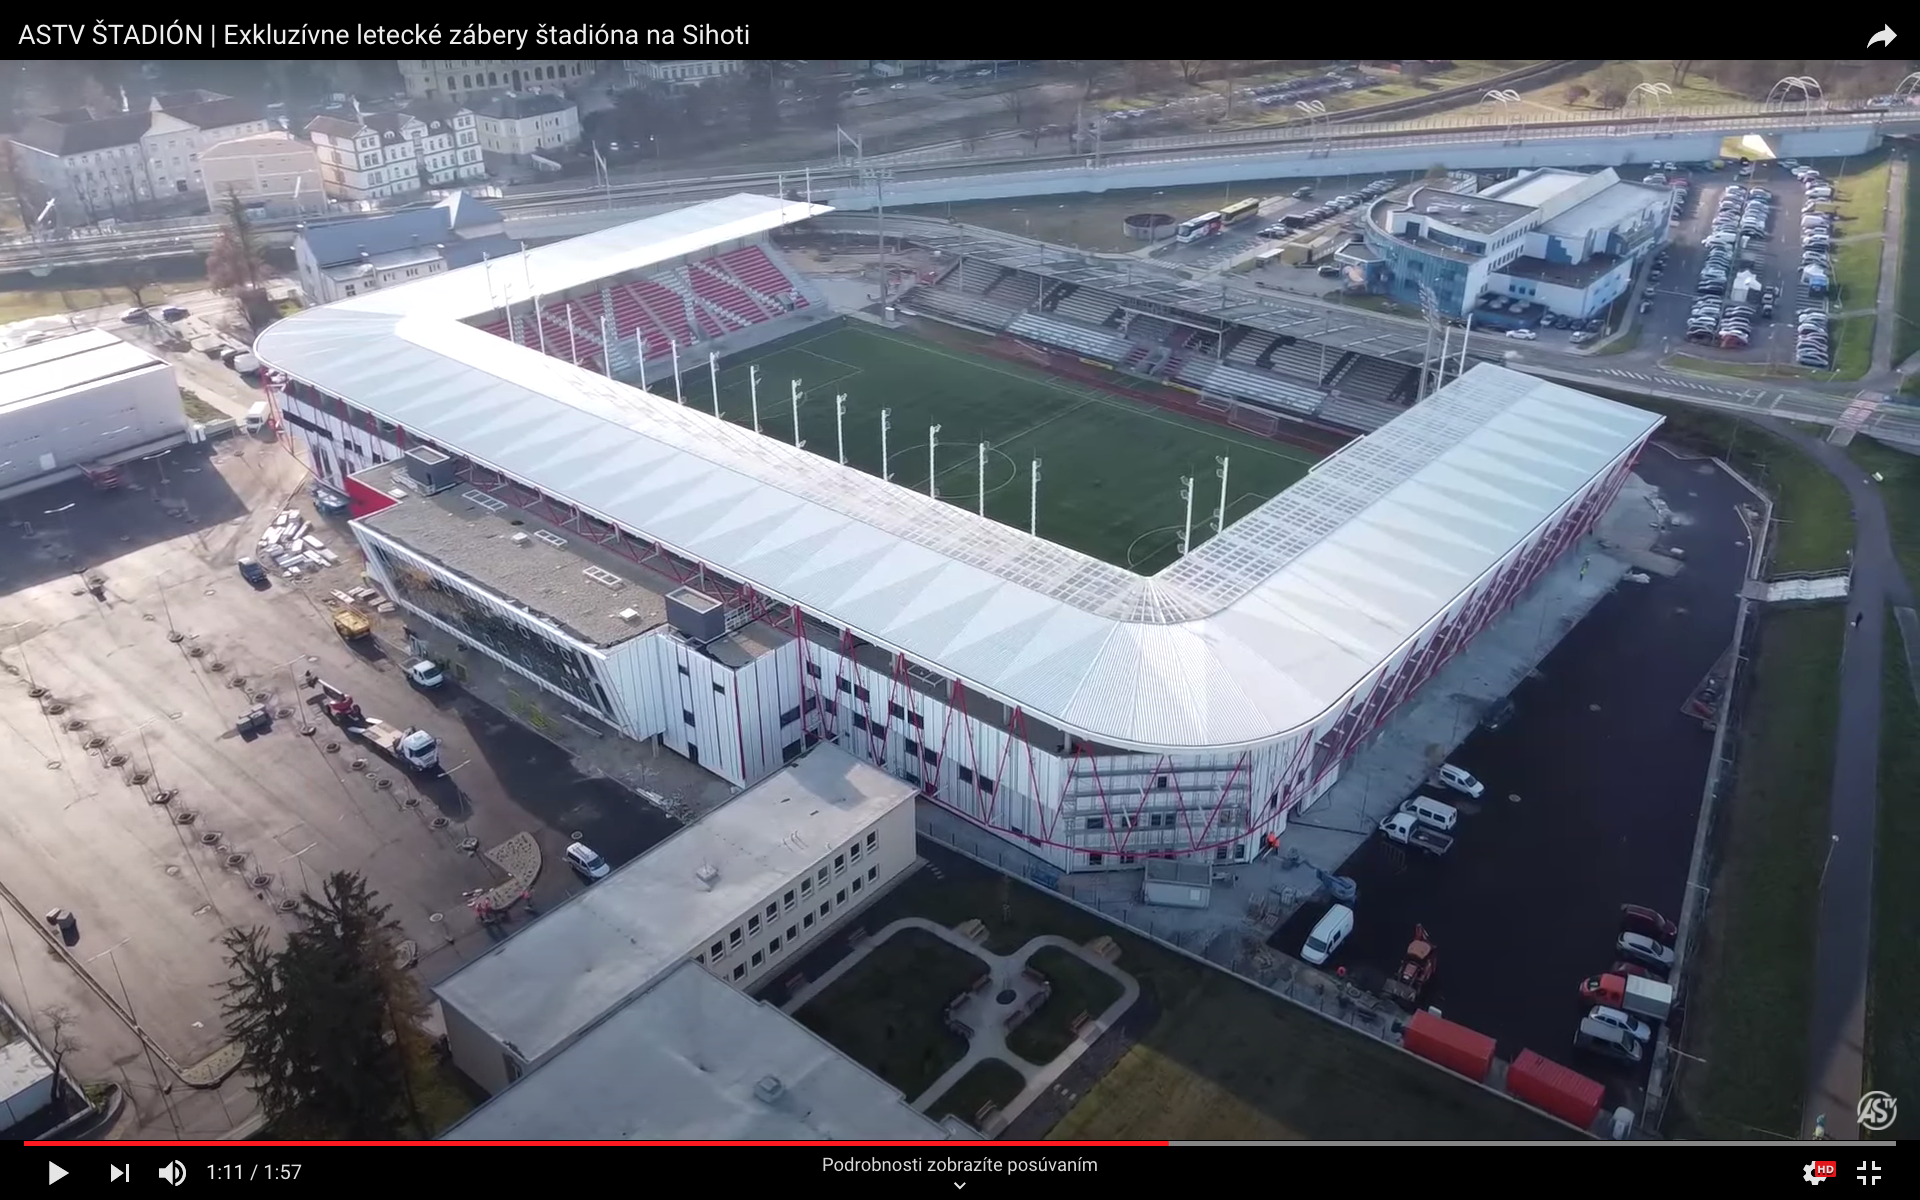 VIDEO: AS Trenčín ukázal exkluzívne letecké zábery nového štadióna